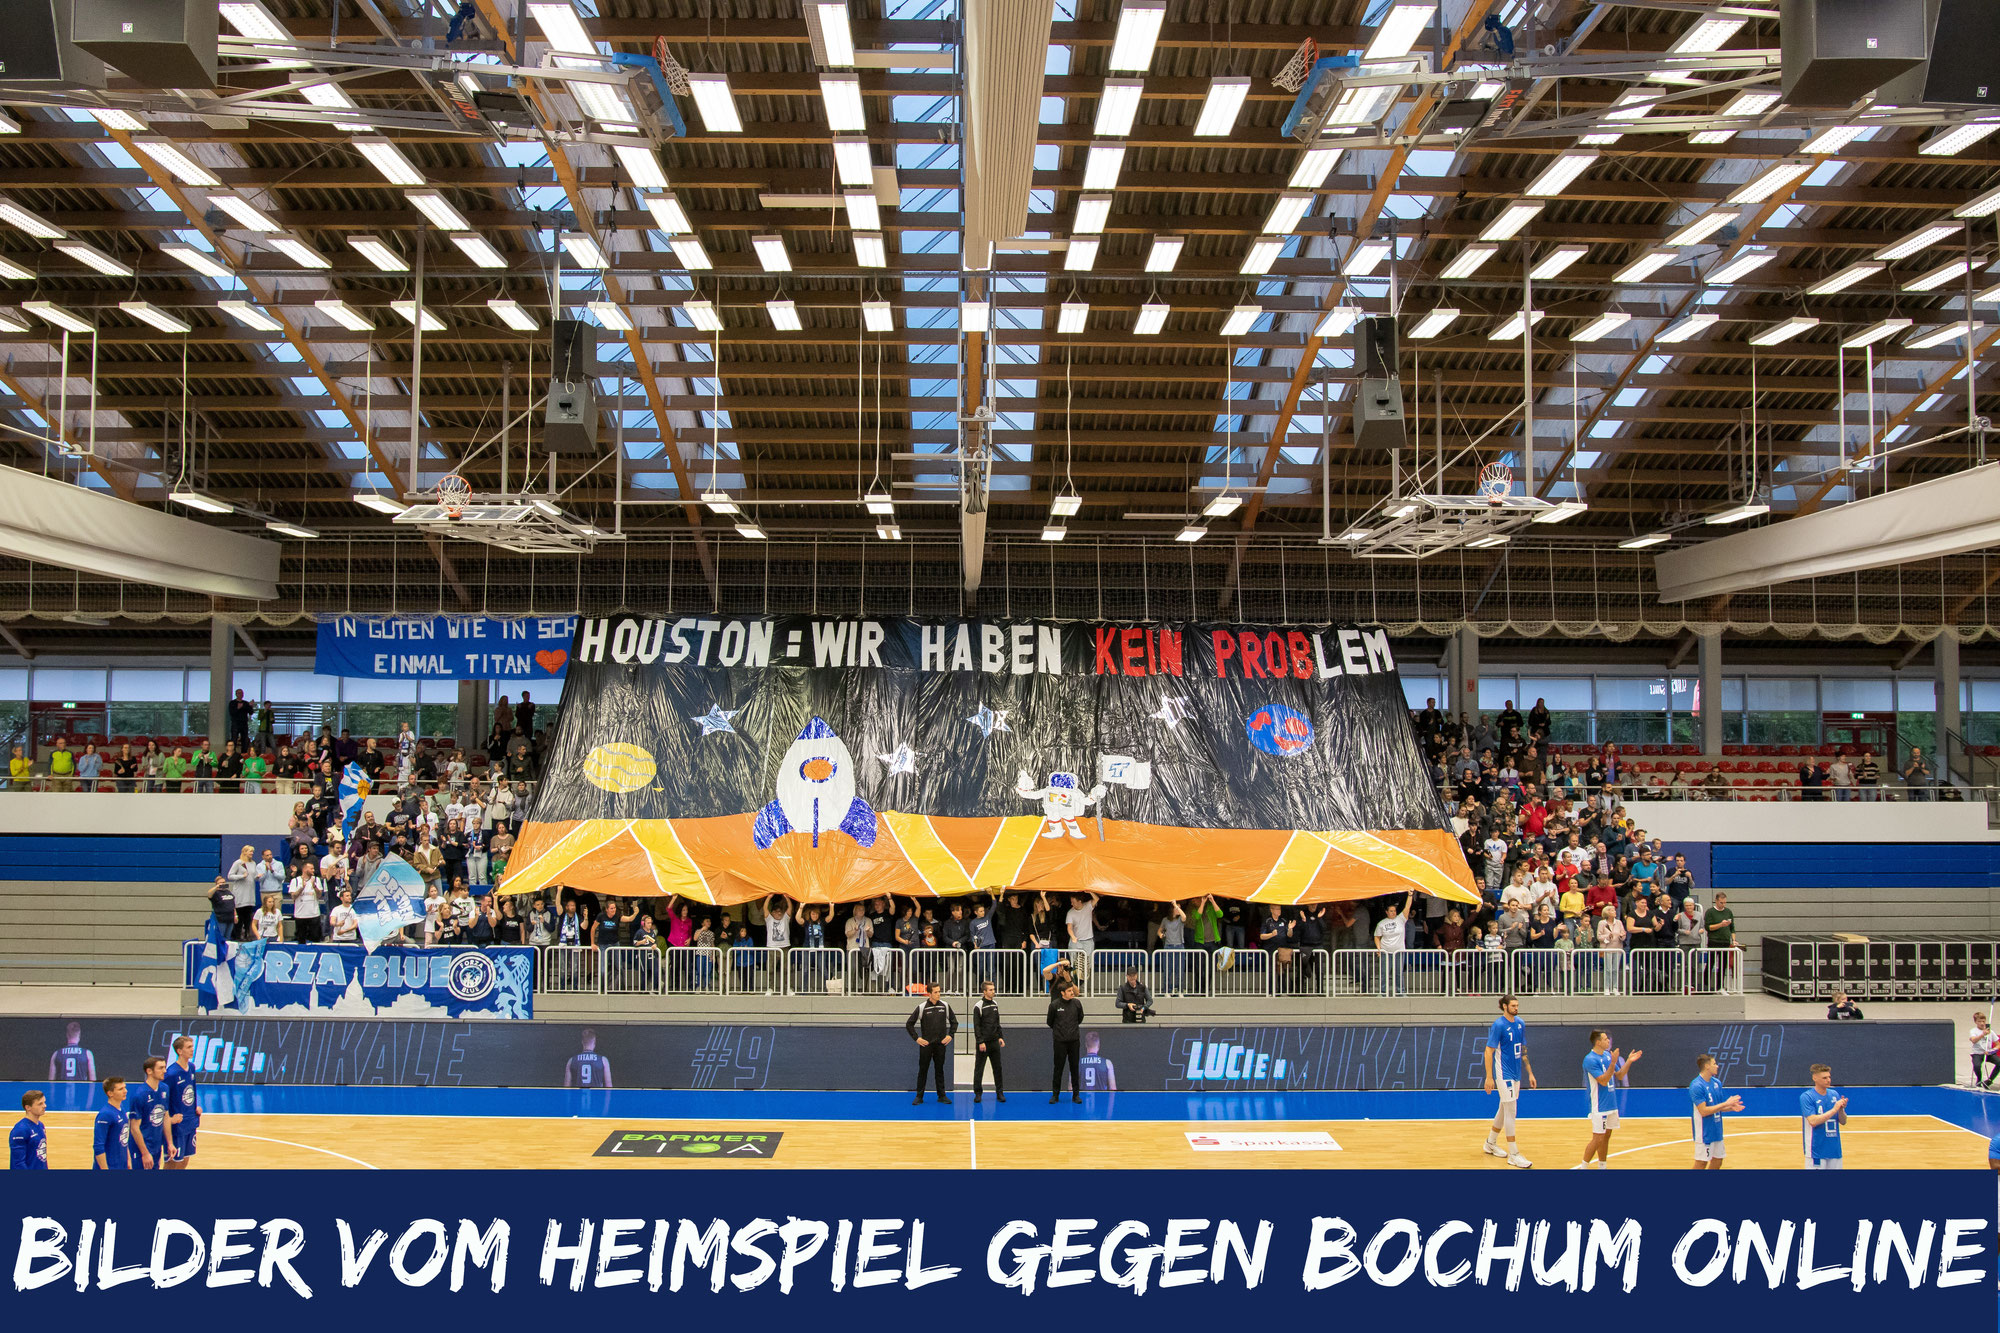 Bildergalerie zum ersten Heimspiel gegen Bochum